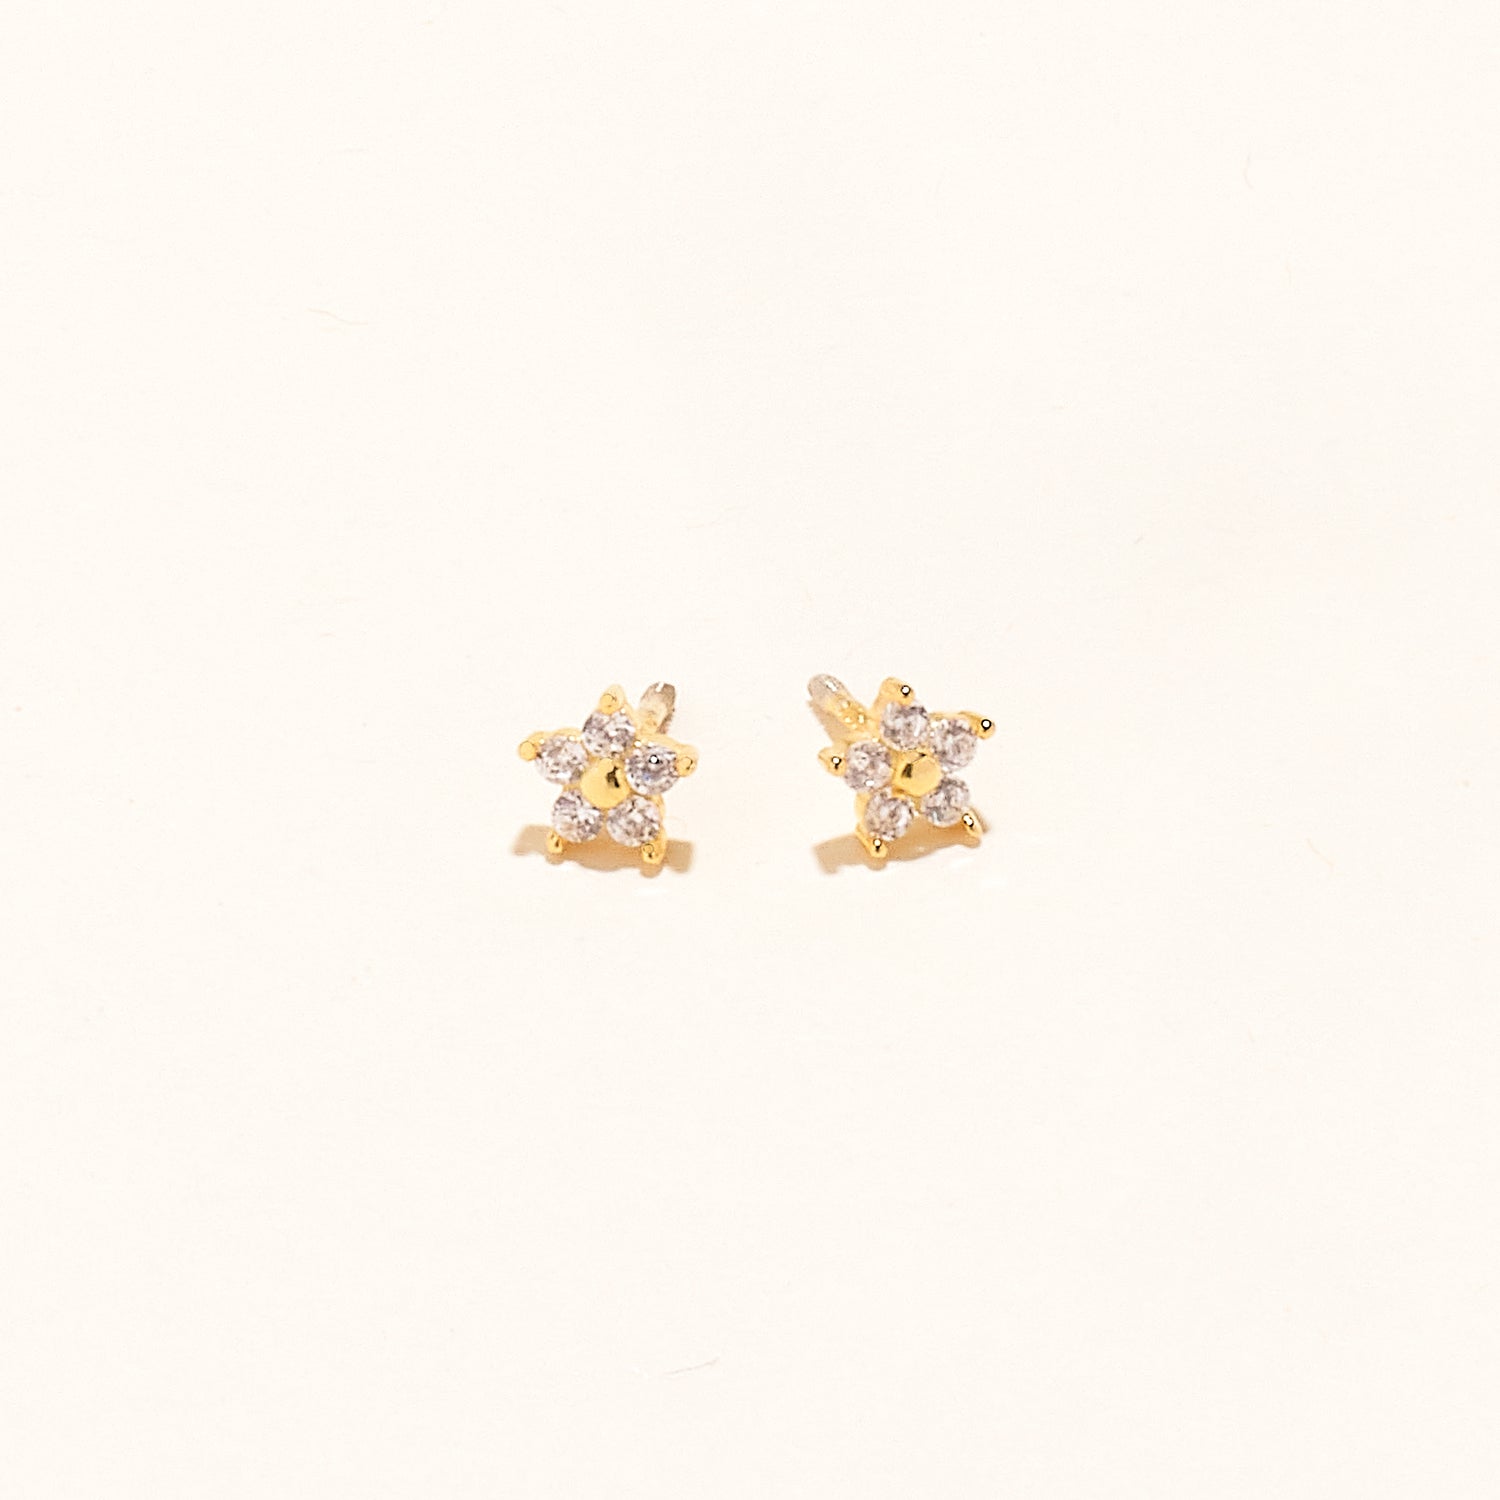 Mini Star Studs Gold by Mignonne Gavigan